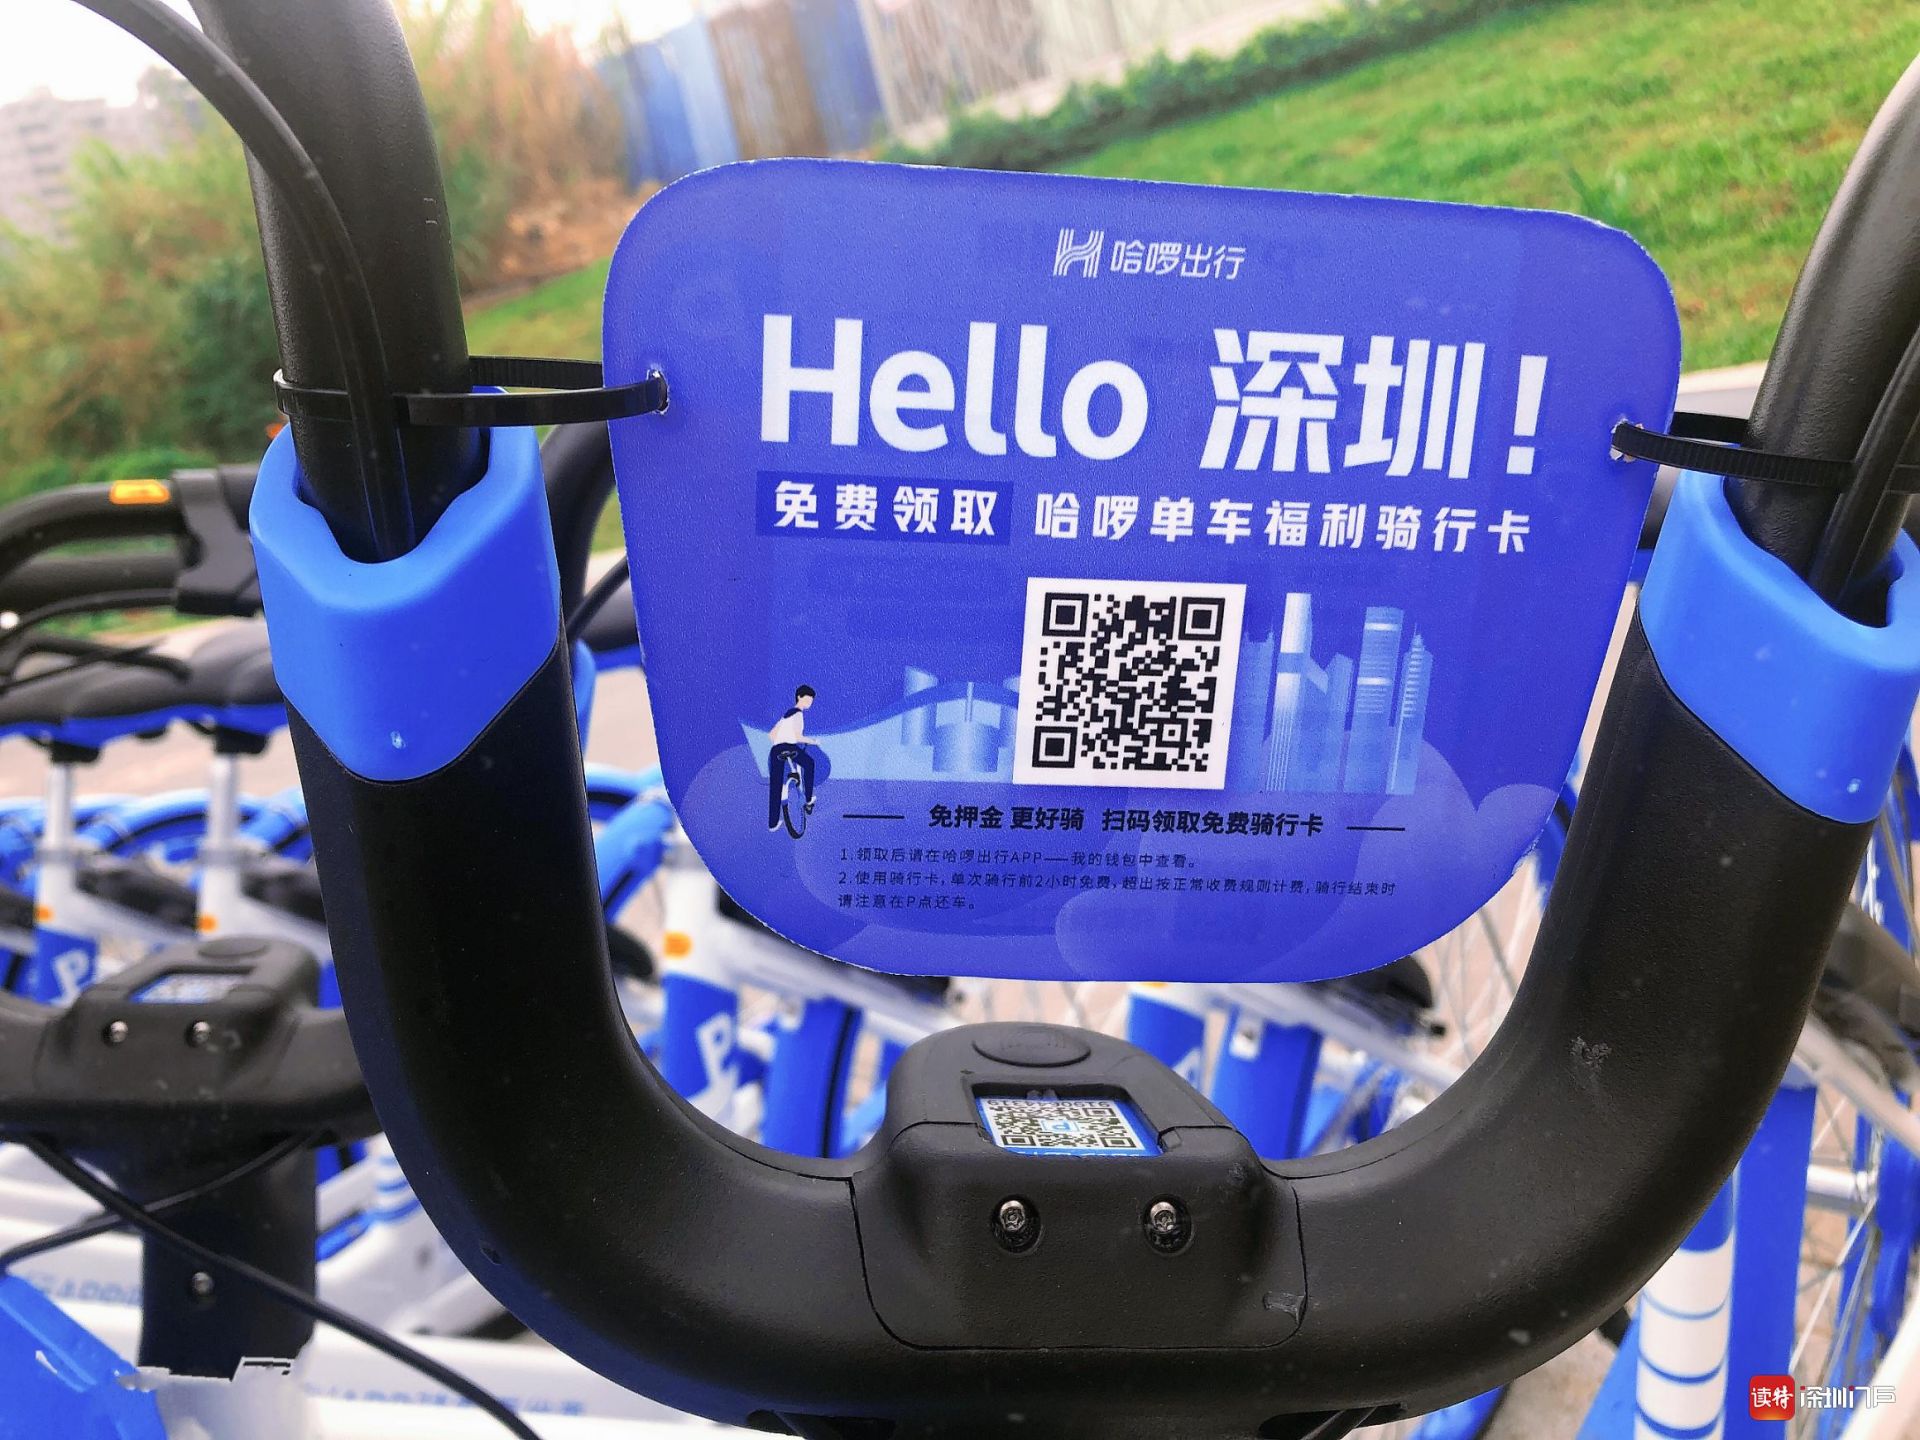 4月3日至4月16日期间,深圳市民可通过扫码哈啰单车上u型板的二维码或